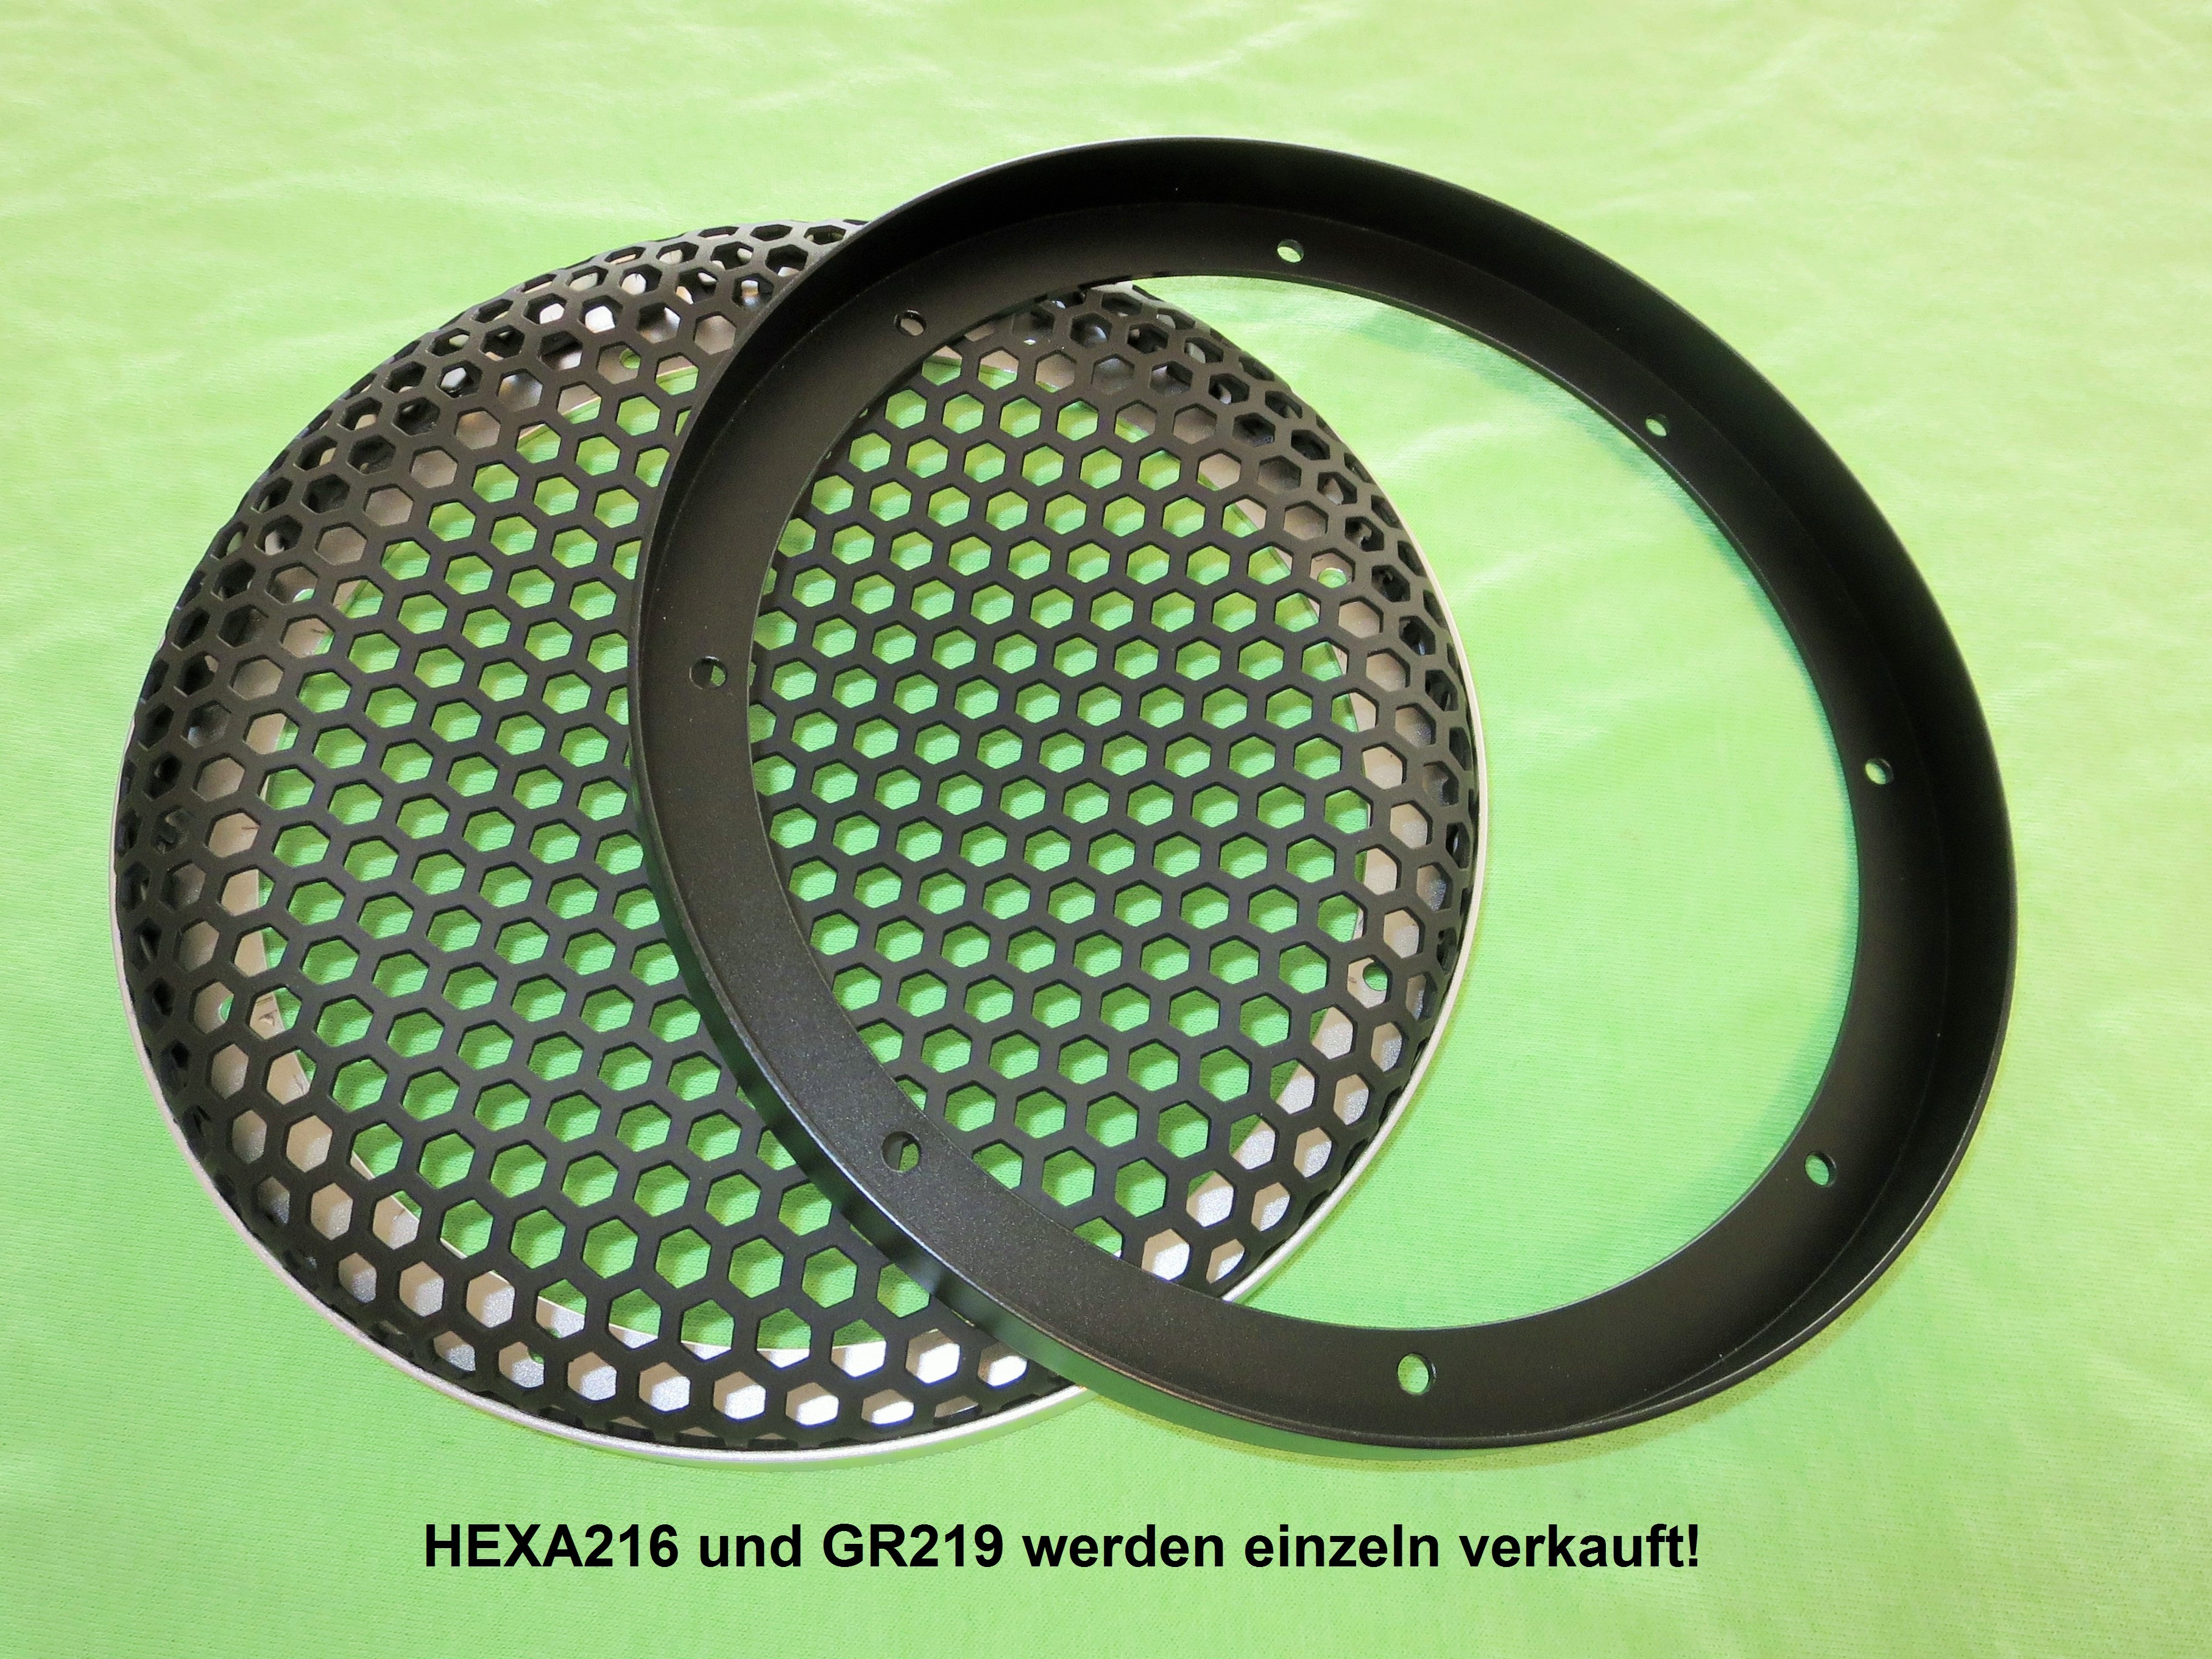 Hexa216 und GR219